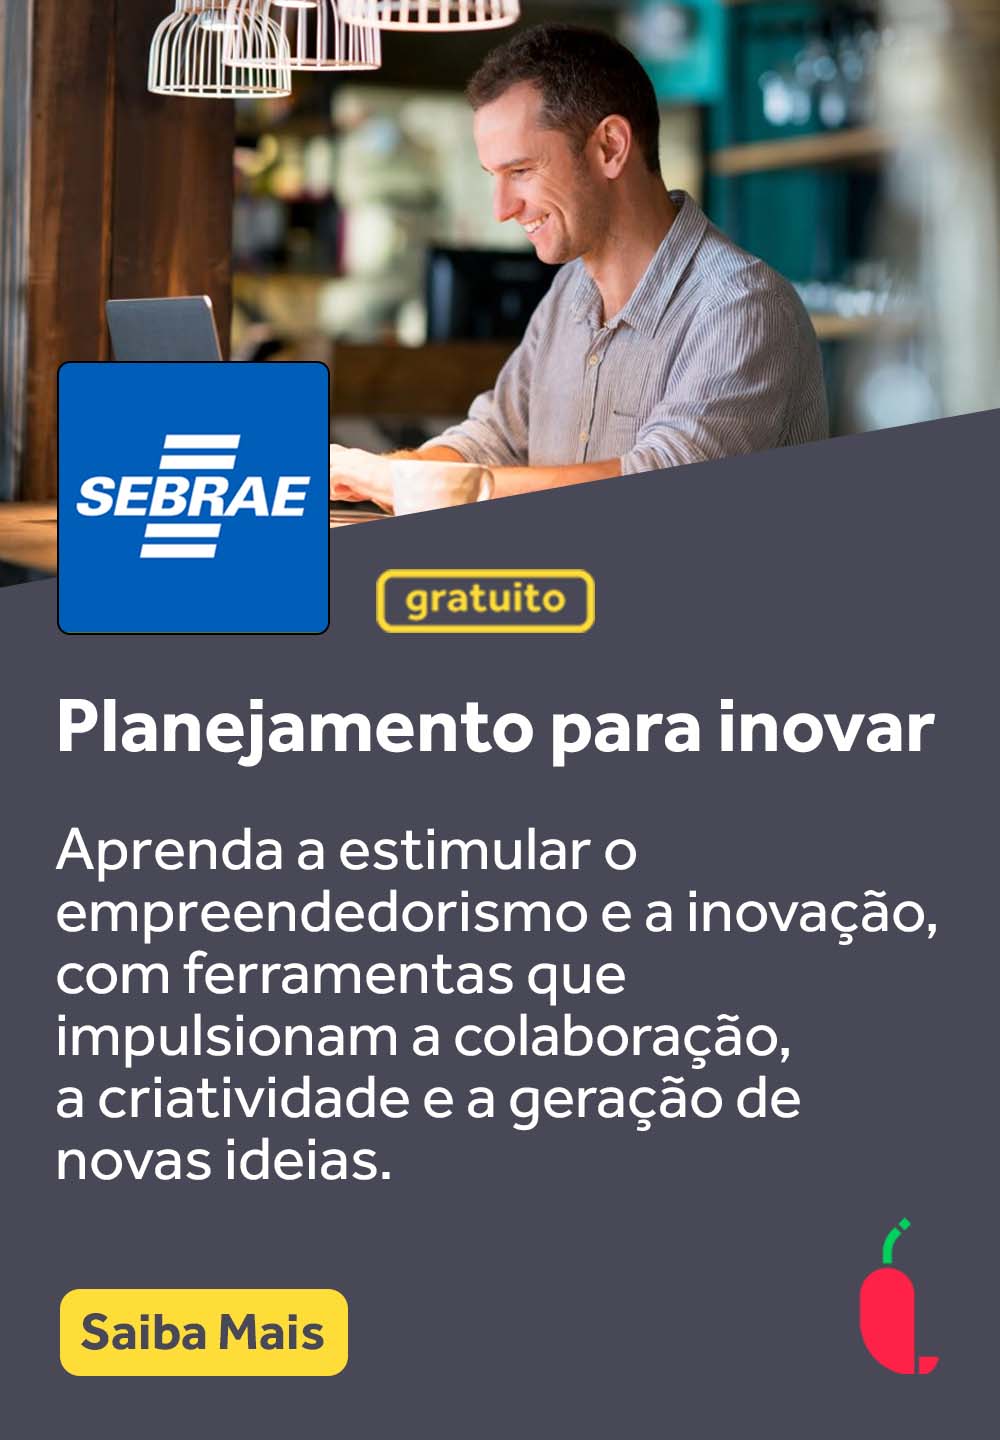 Banner_Cursos_Pimenta_Sebrae_Planejamento para inovar